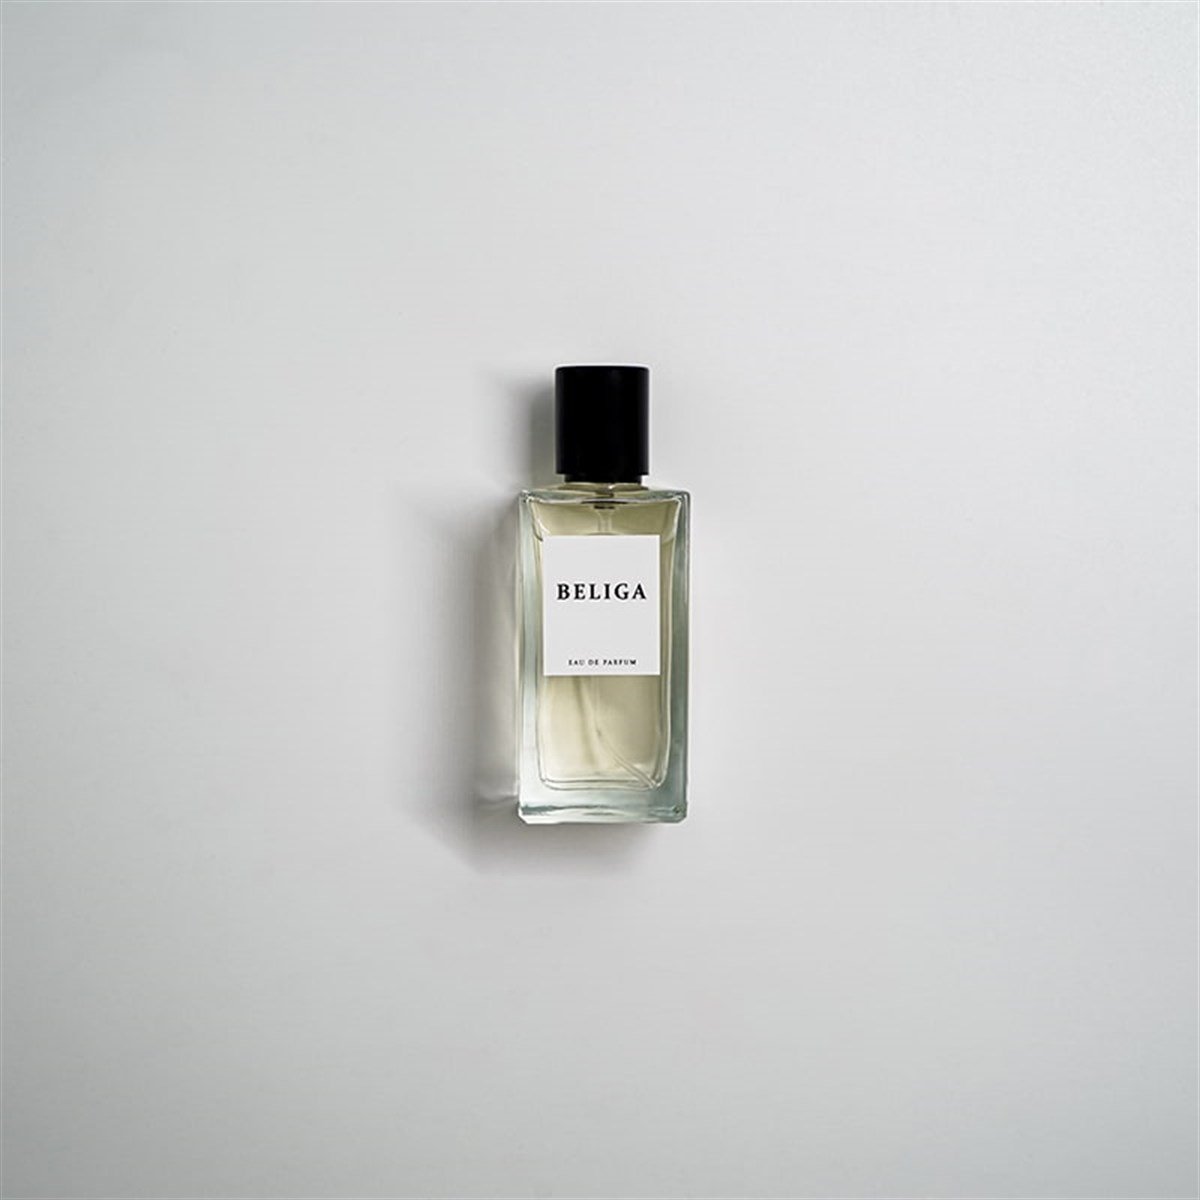 M30 Beliga - Lalique Denemeye Değer